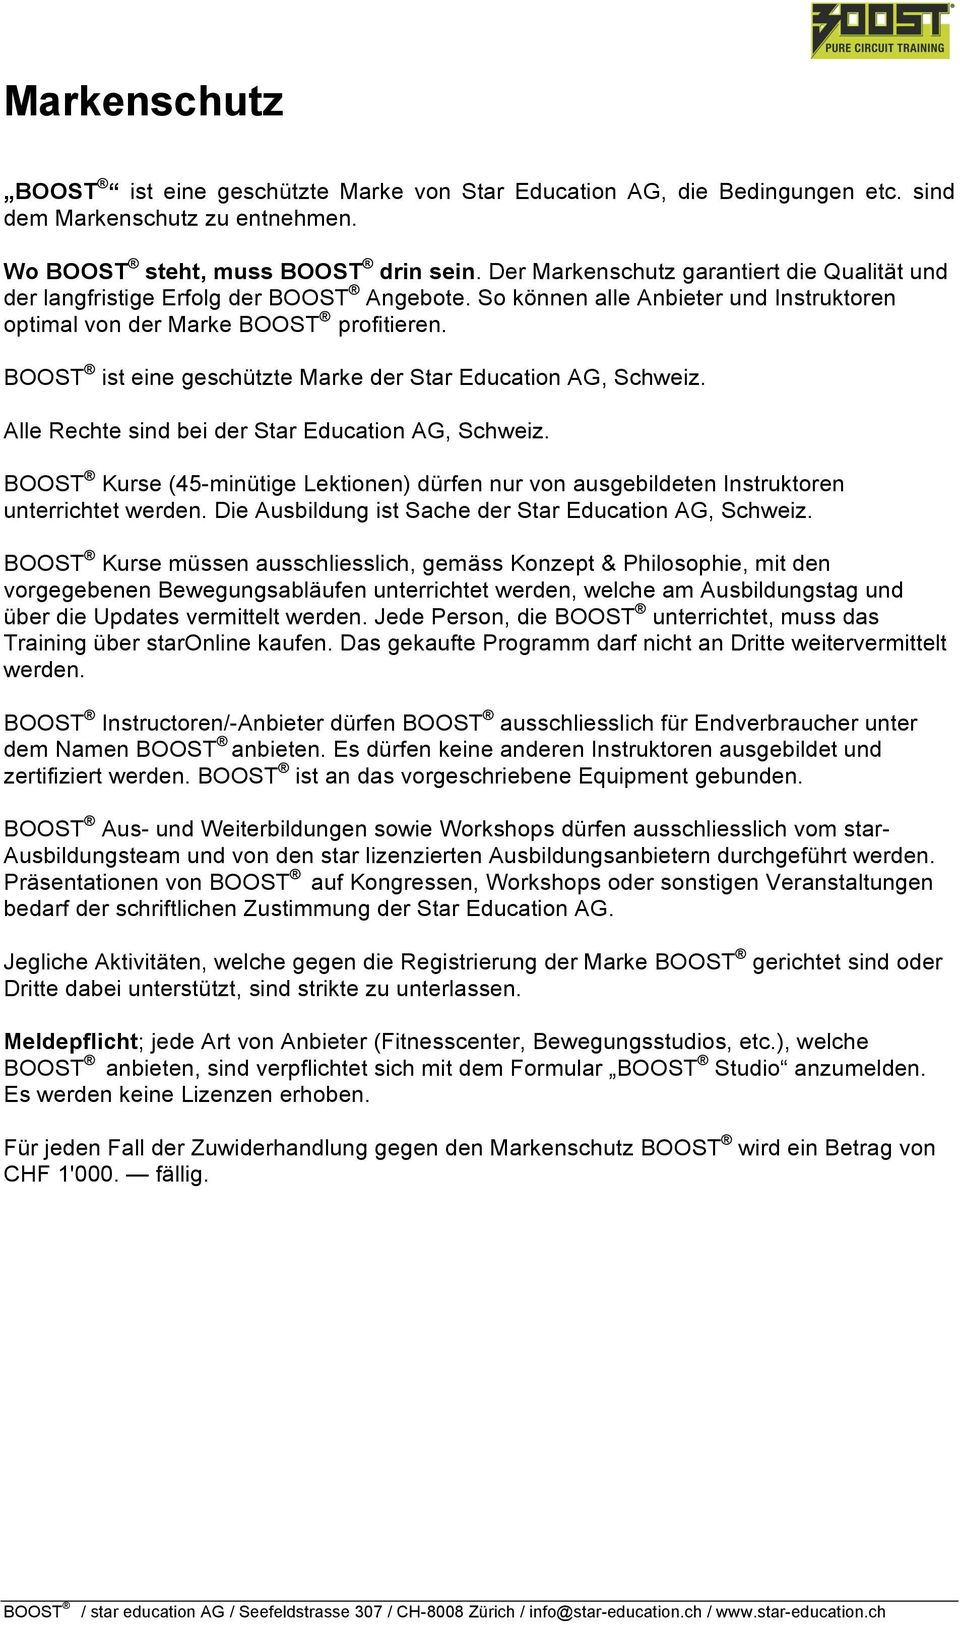 BOOST ist eine geschützte Marke der Star Education AG, Schweiz. Alle Rechte sind bei der Star Education AG, Schweiz.